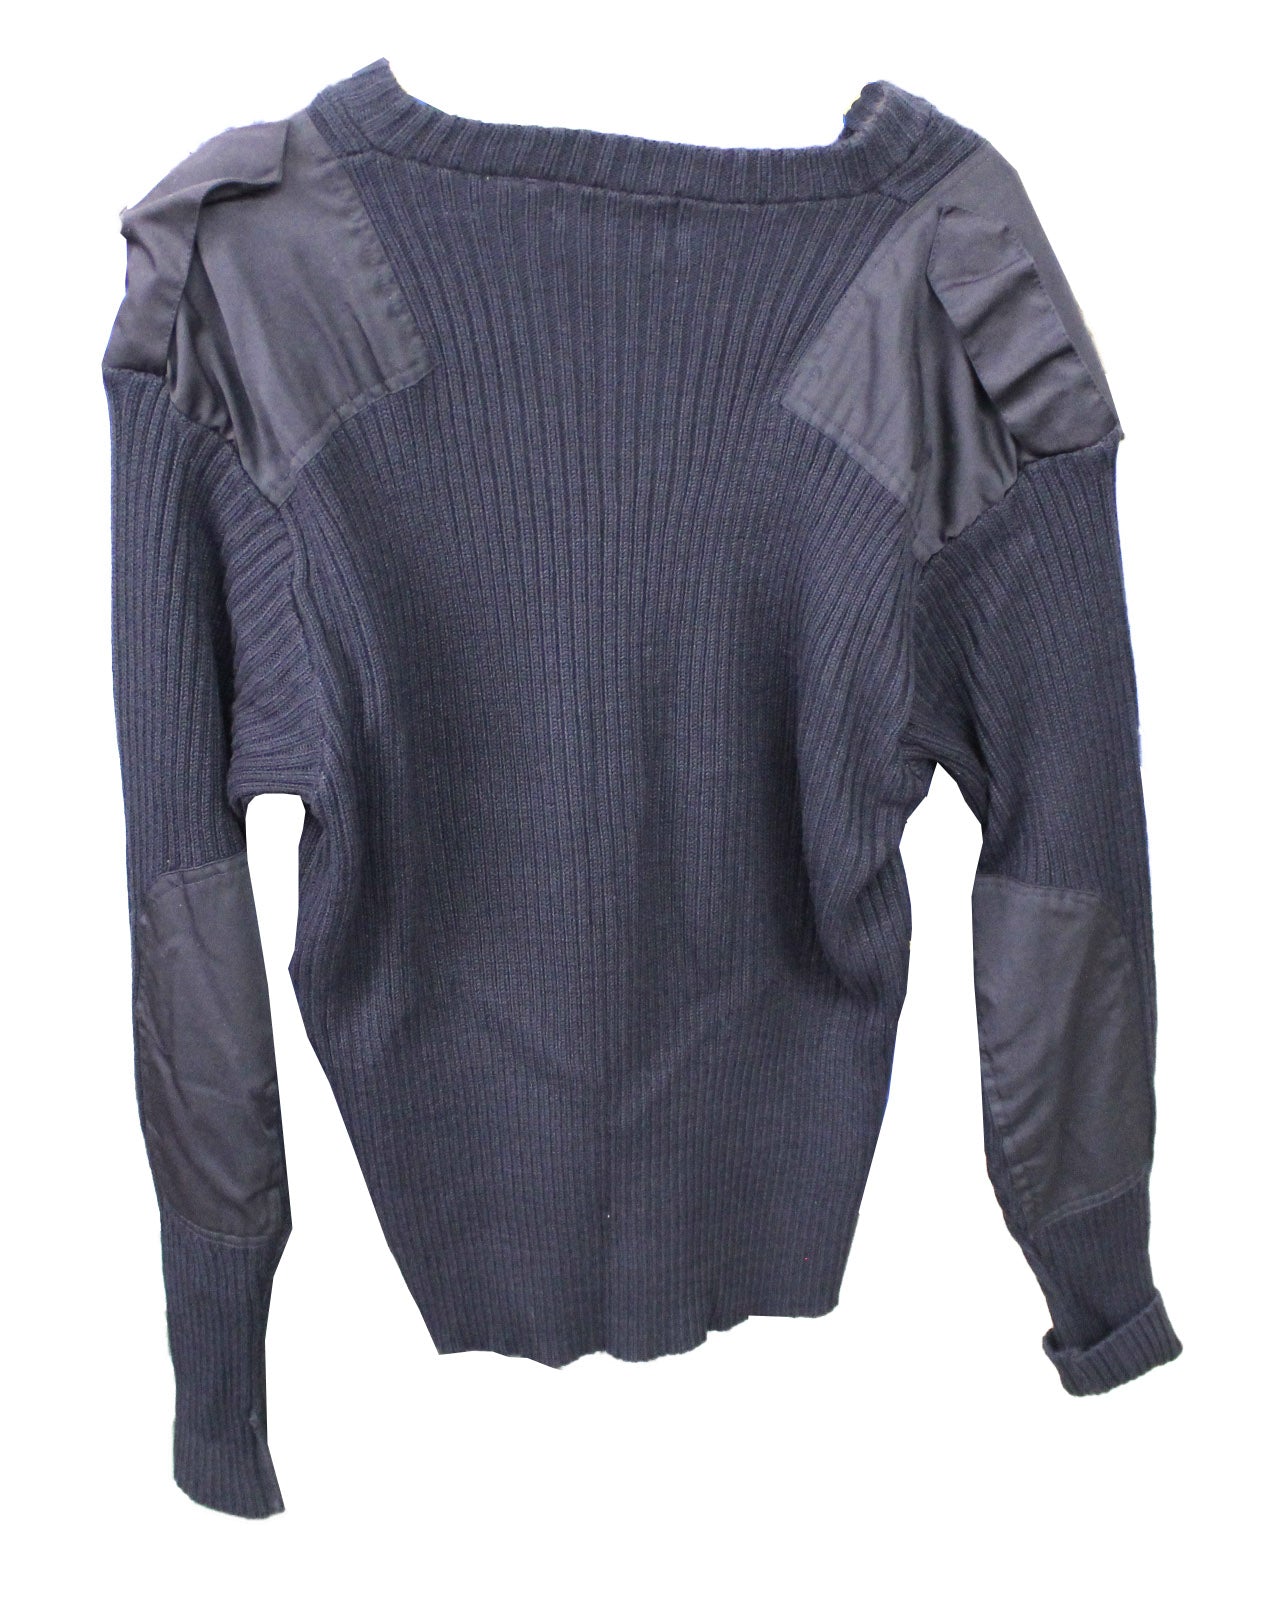 Solar 1 Clothing Commando Style Sweater Navy Extra Large